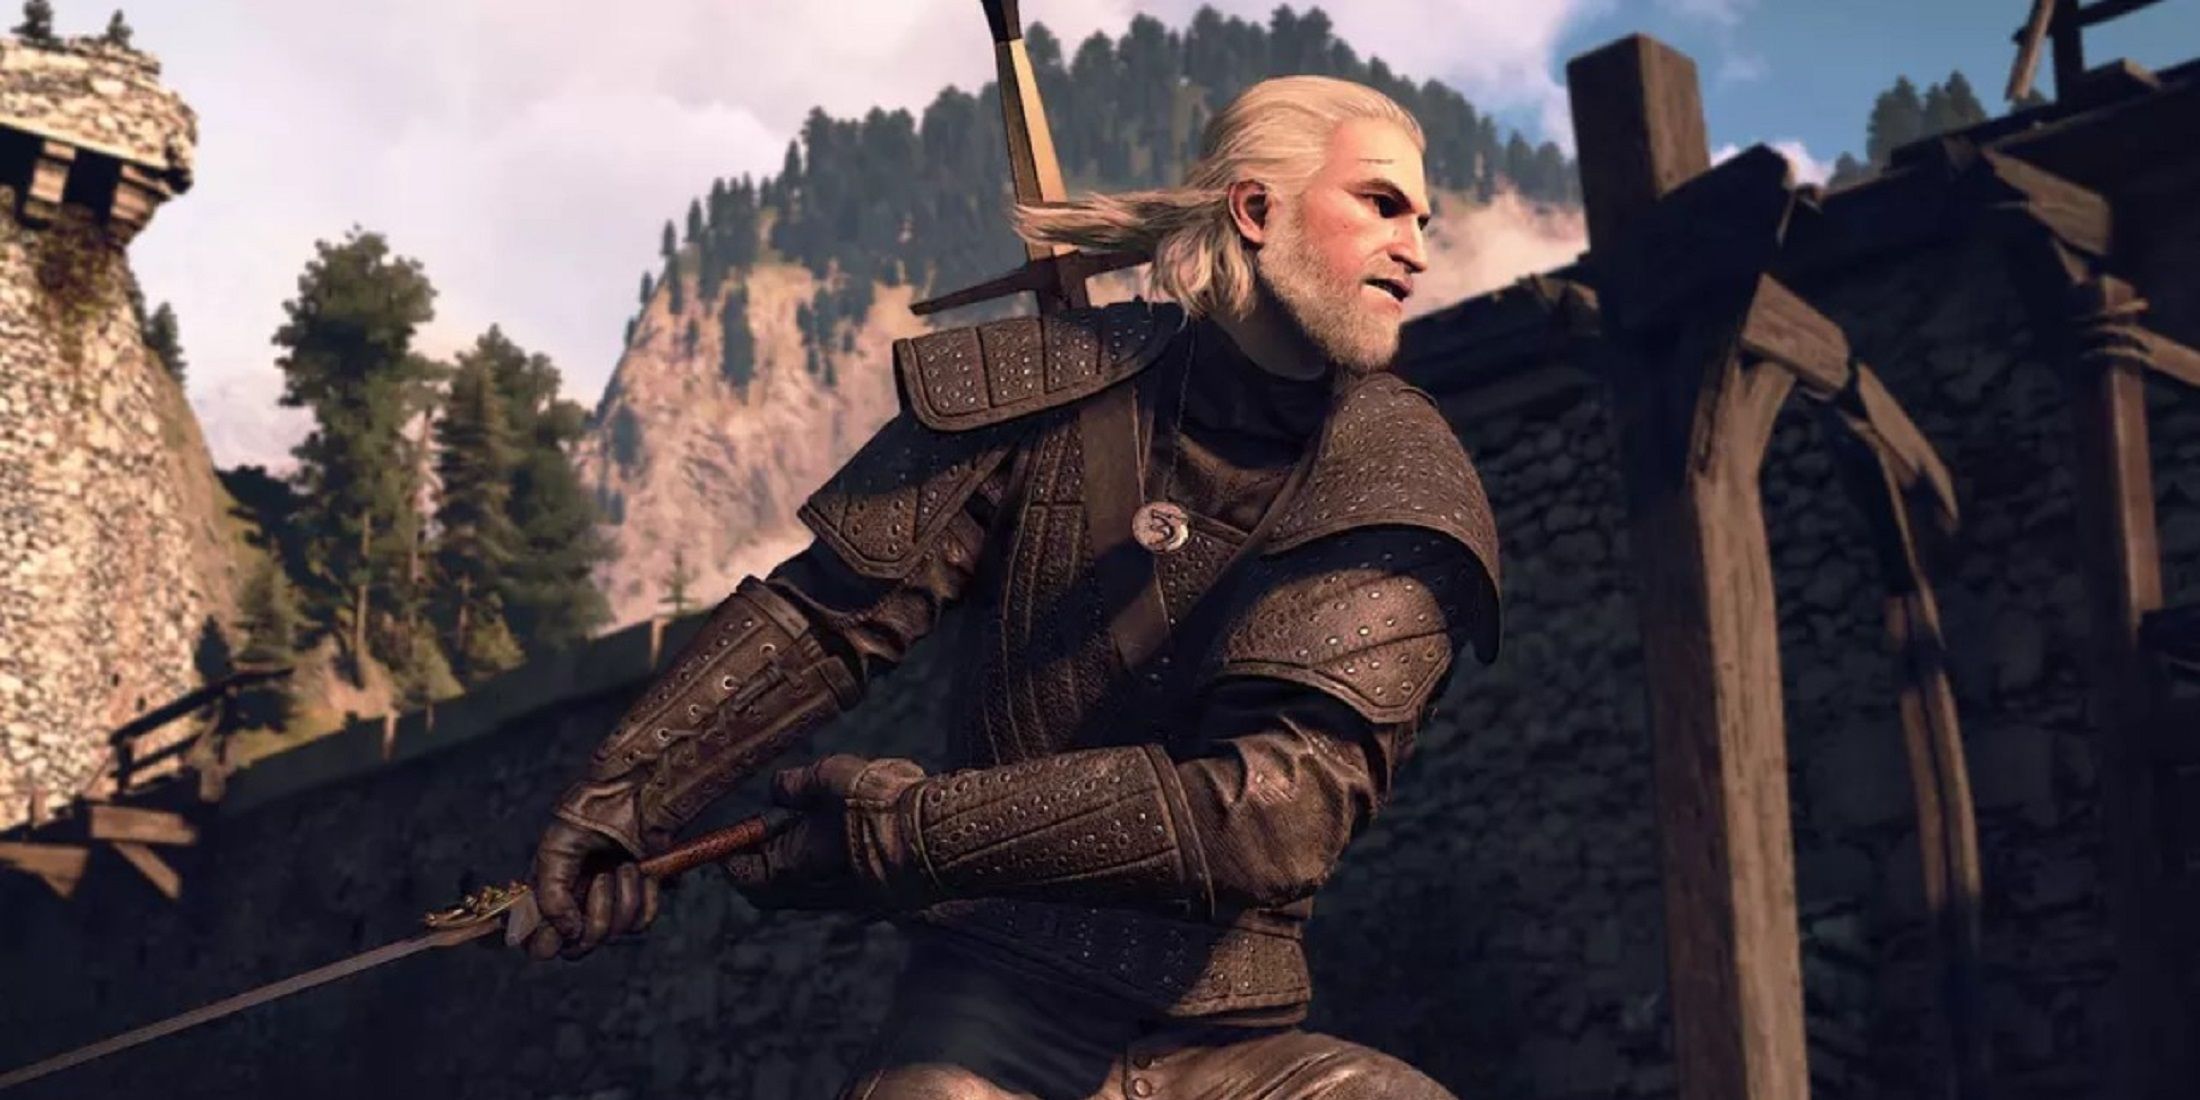 Geralt in armor swinging sword